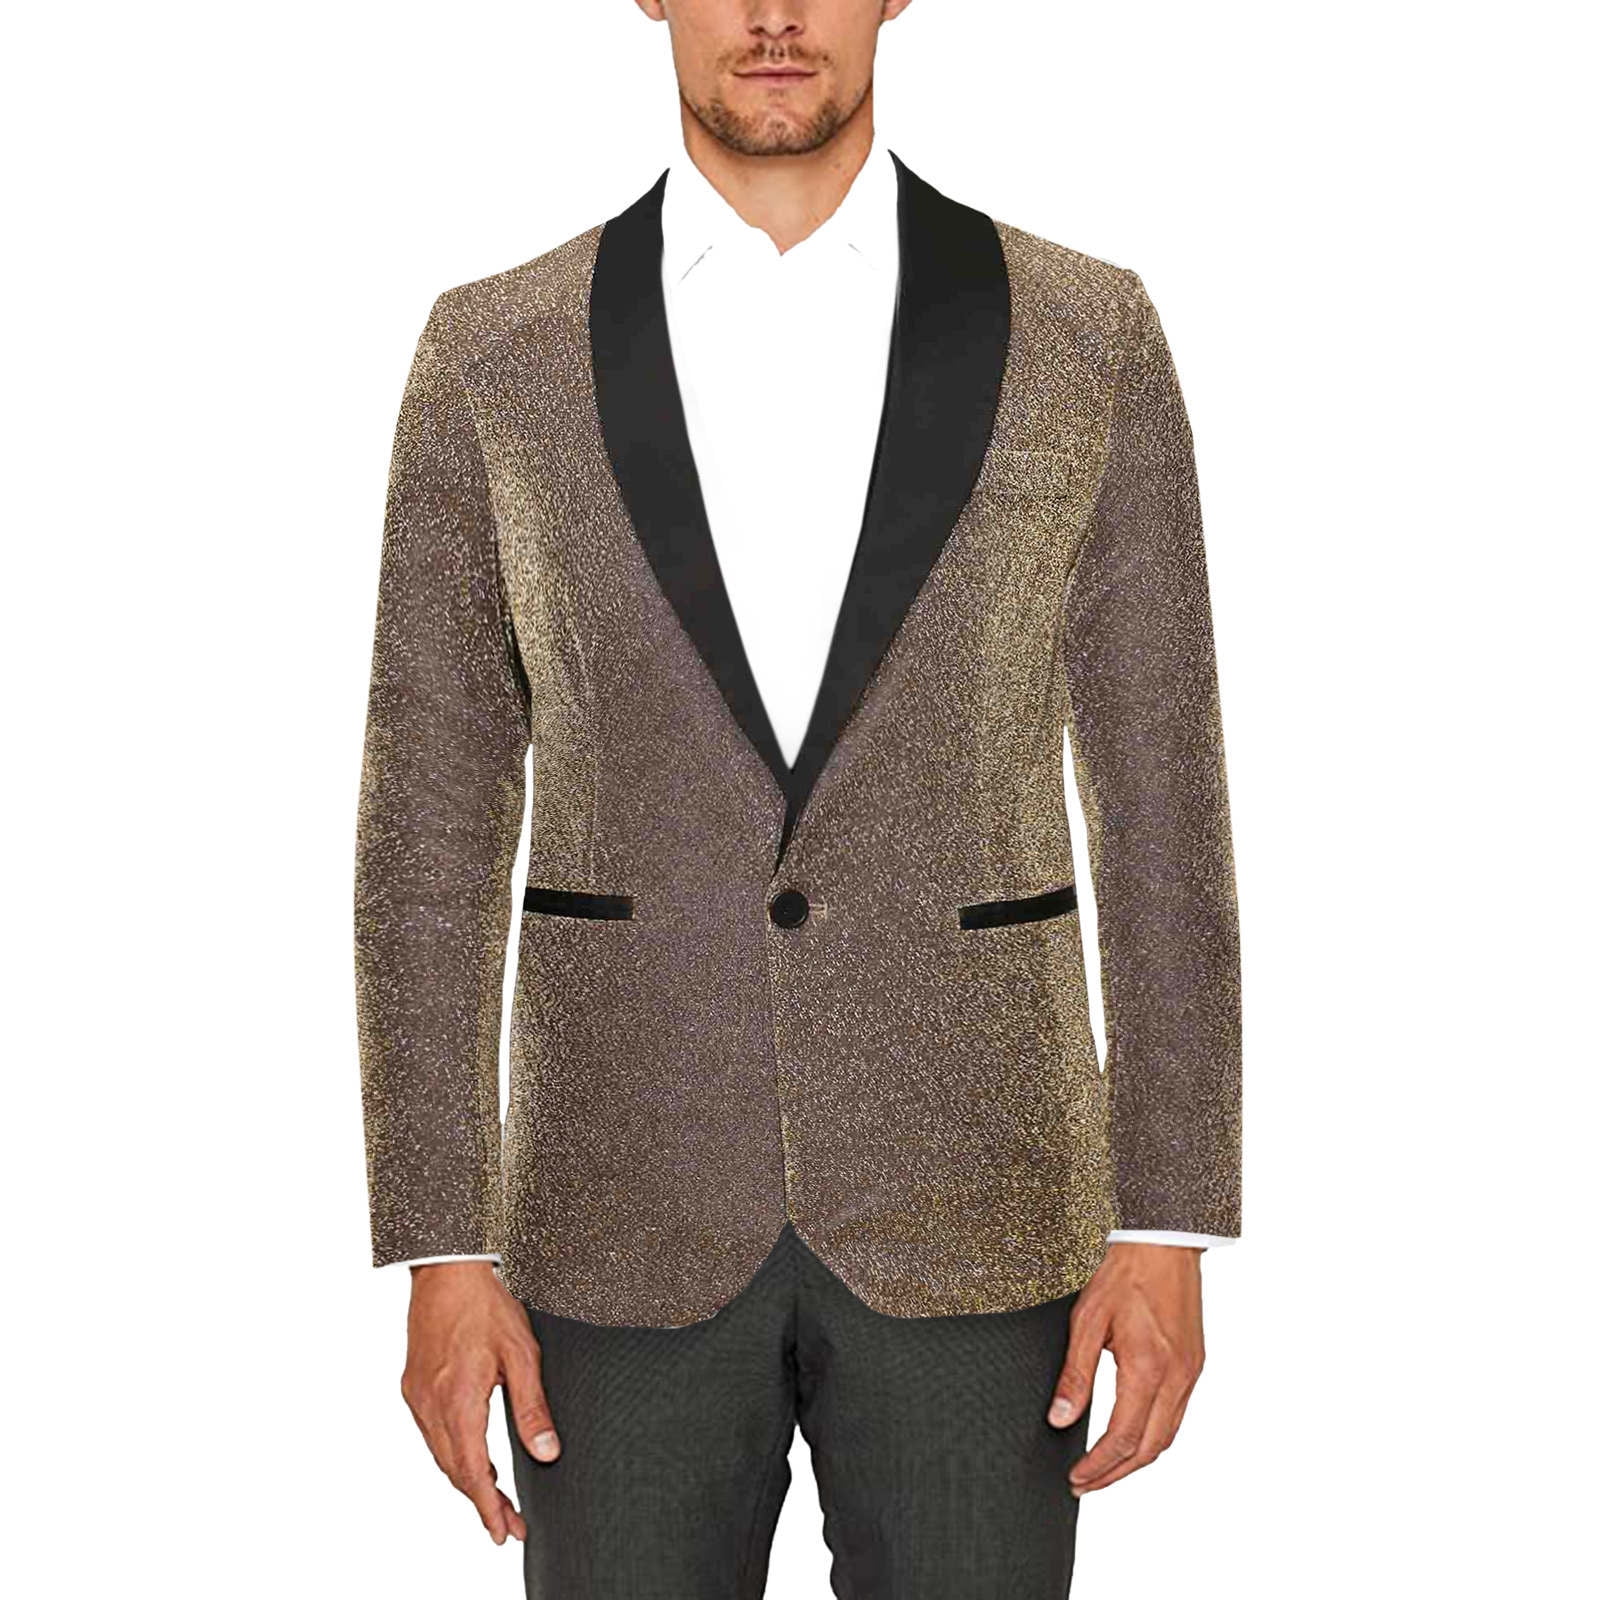 Gray Wool Tweed Winter Suit for Men Herringbone Slim Fit Formal Groom  Tuxedo 3 Piece Wedding